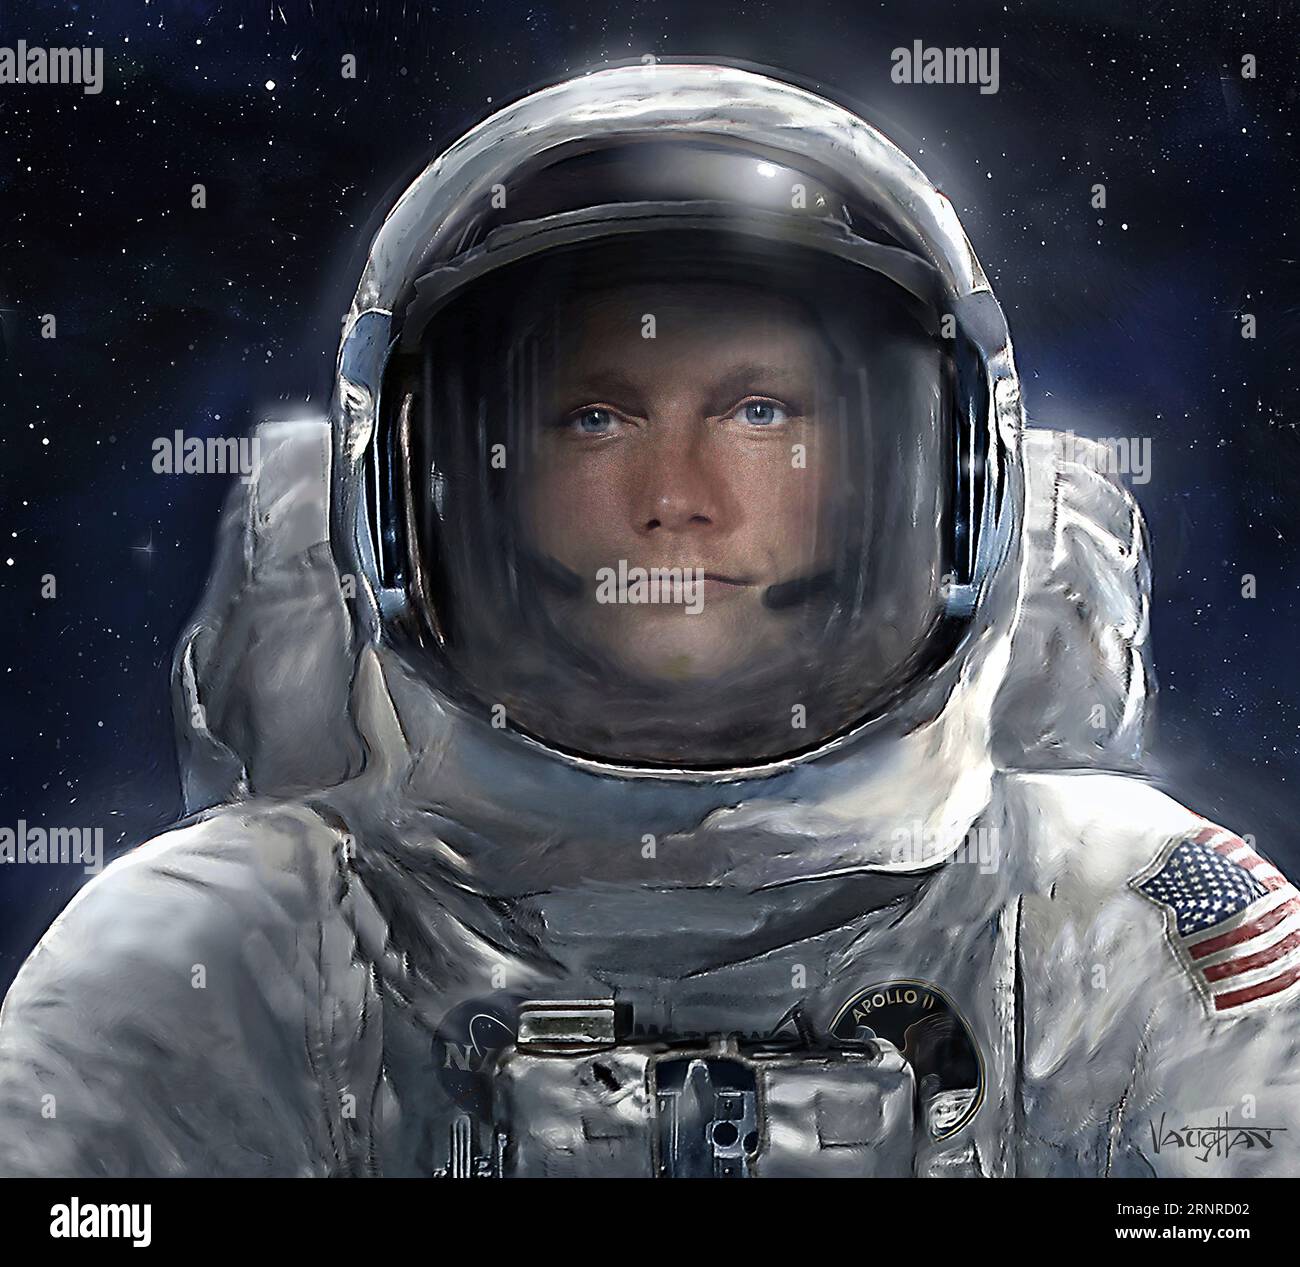 L'astronaute d'Apollo 11 Neil Armstrong sur la Lune, illustration Banque D'Images